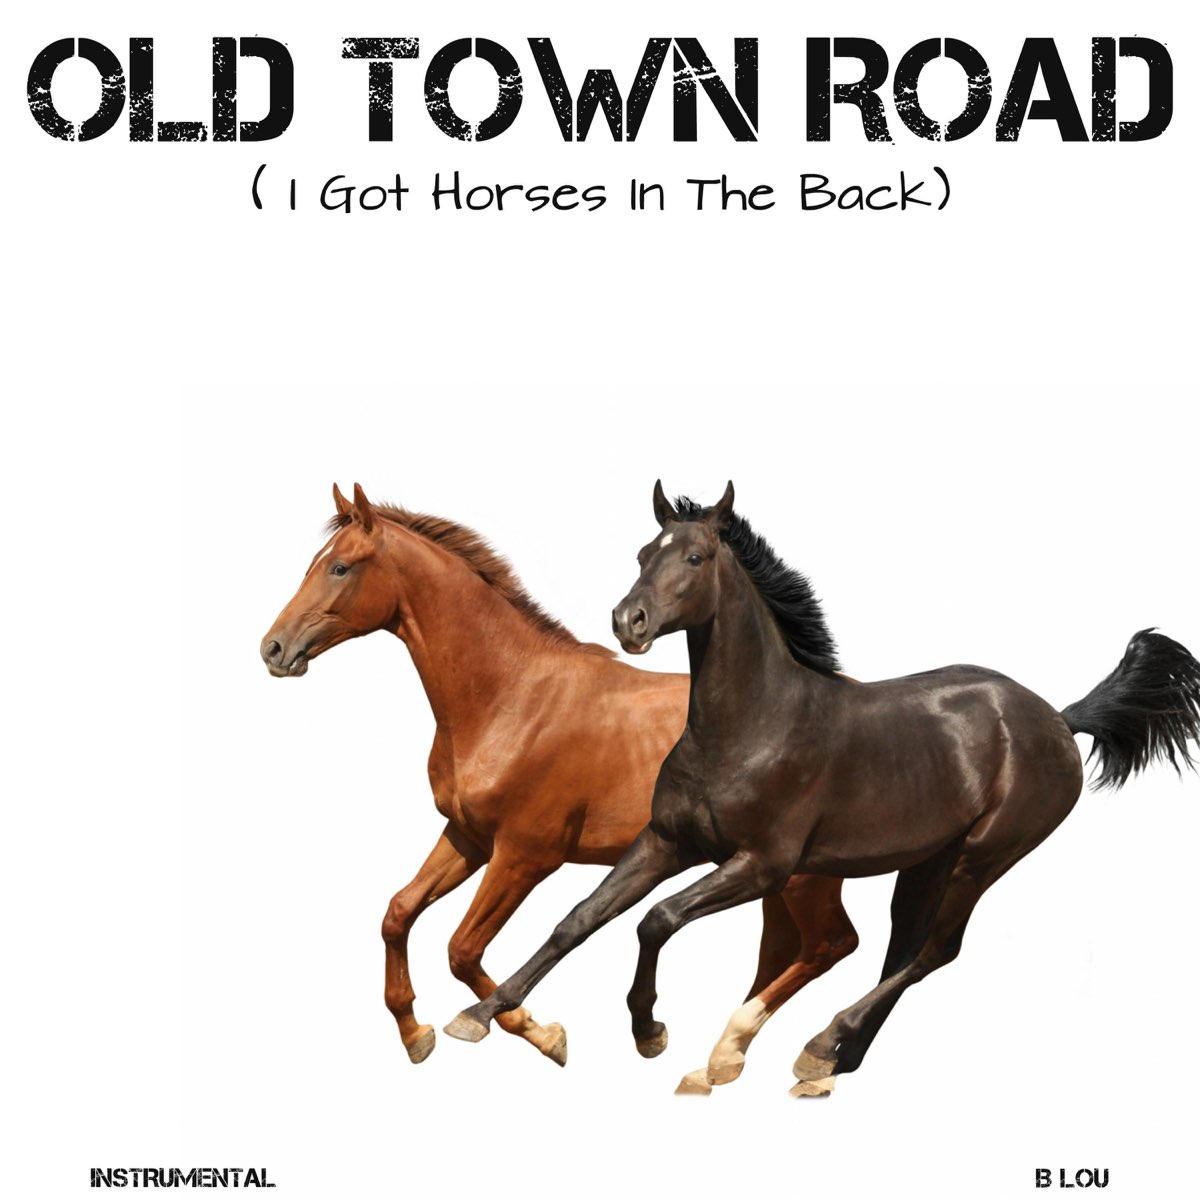 Музыка horses. Олд Таун роуд. Old Town Road обложка. Обложка трека old Town Road. Old Town Road Remix обложка.